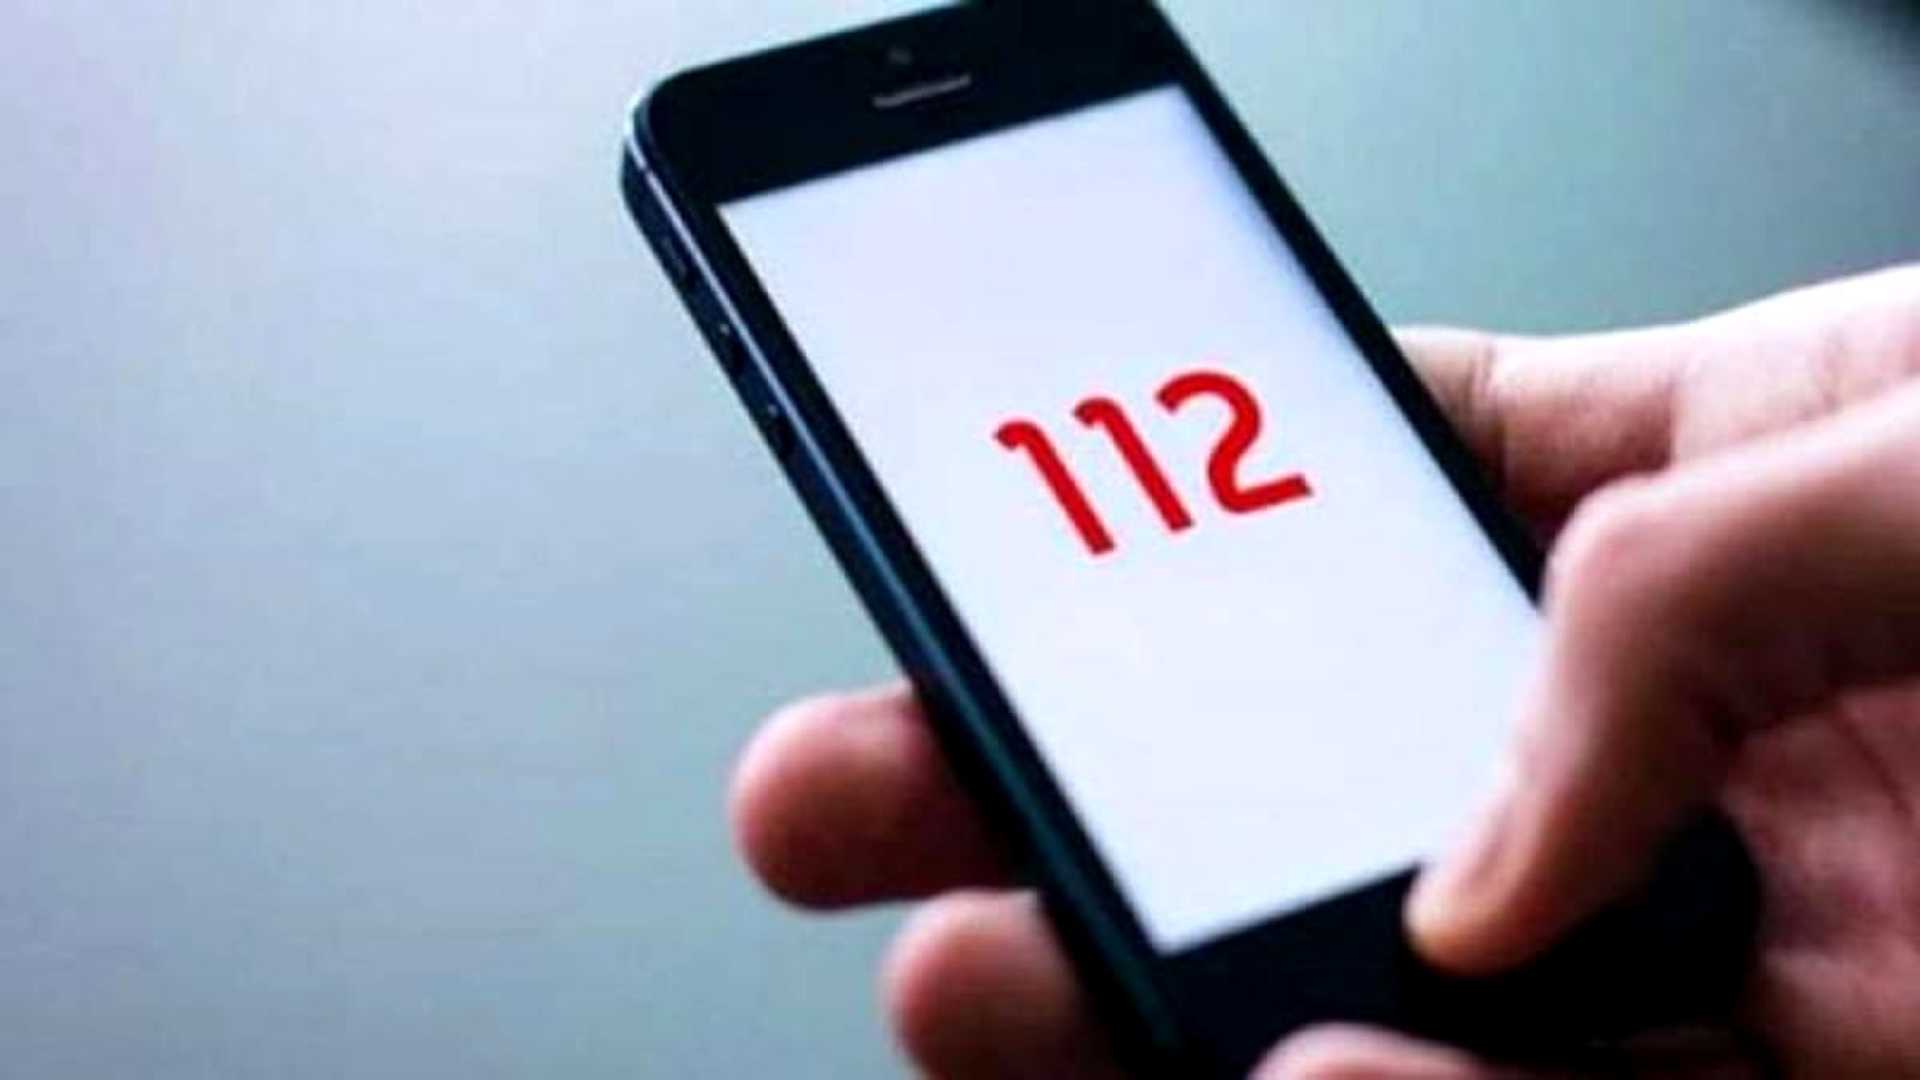 Oricine poate oferi detalii cu privire la persoana dispărută este rugat să apeleze SNUAU 112 sau să informeze cea mai apropiată unitate de poliţie